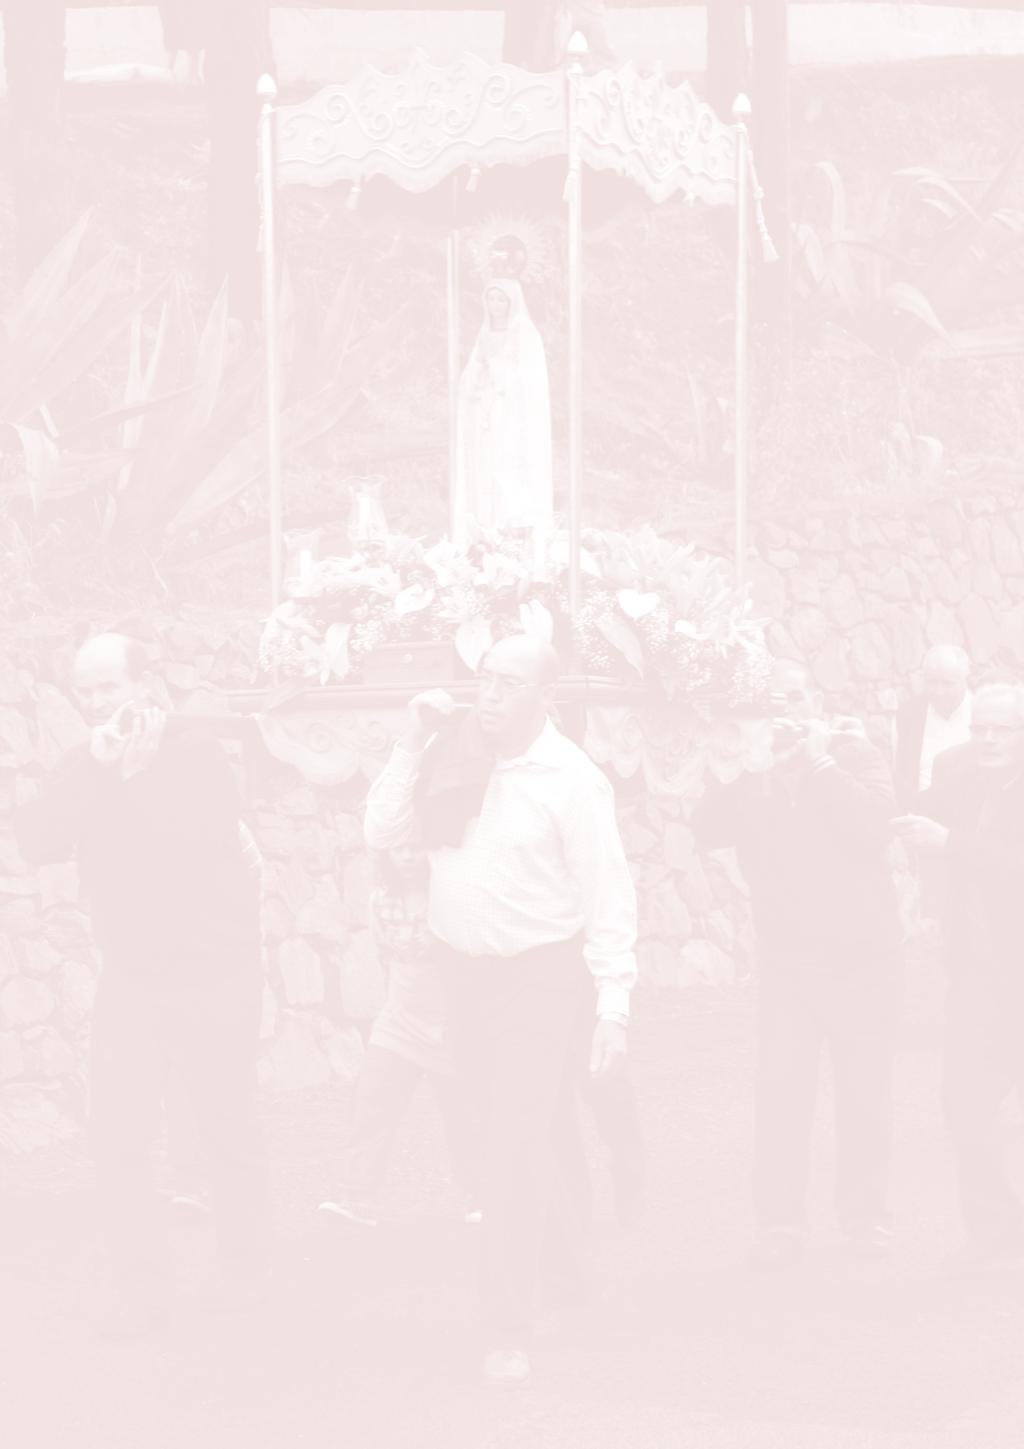 Saluda del Párroco Q Queridos feligreses y amigos del Faro, Cuesta Falcón y Espartero: Una vez más, la Virgen María, bajo la advocación de Ntra. Sra. de Fátima nos convoca a la fiesta.